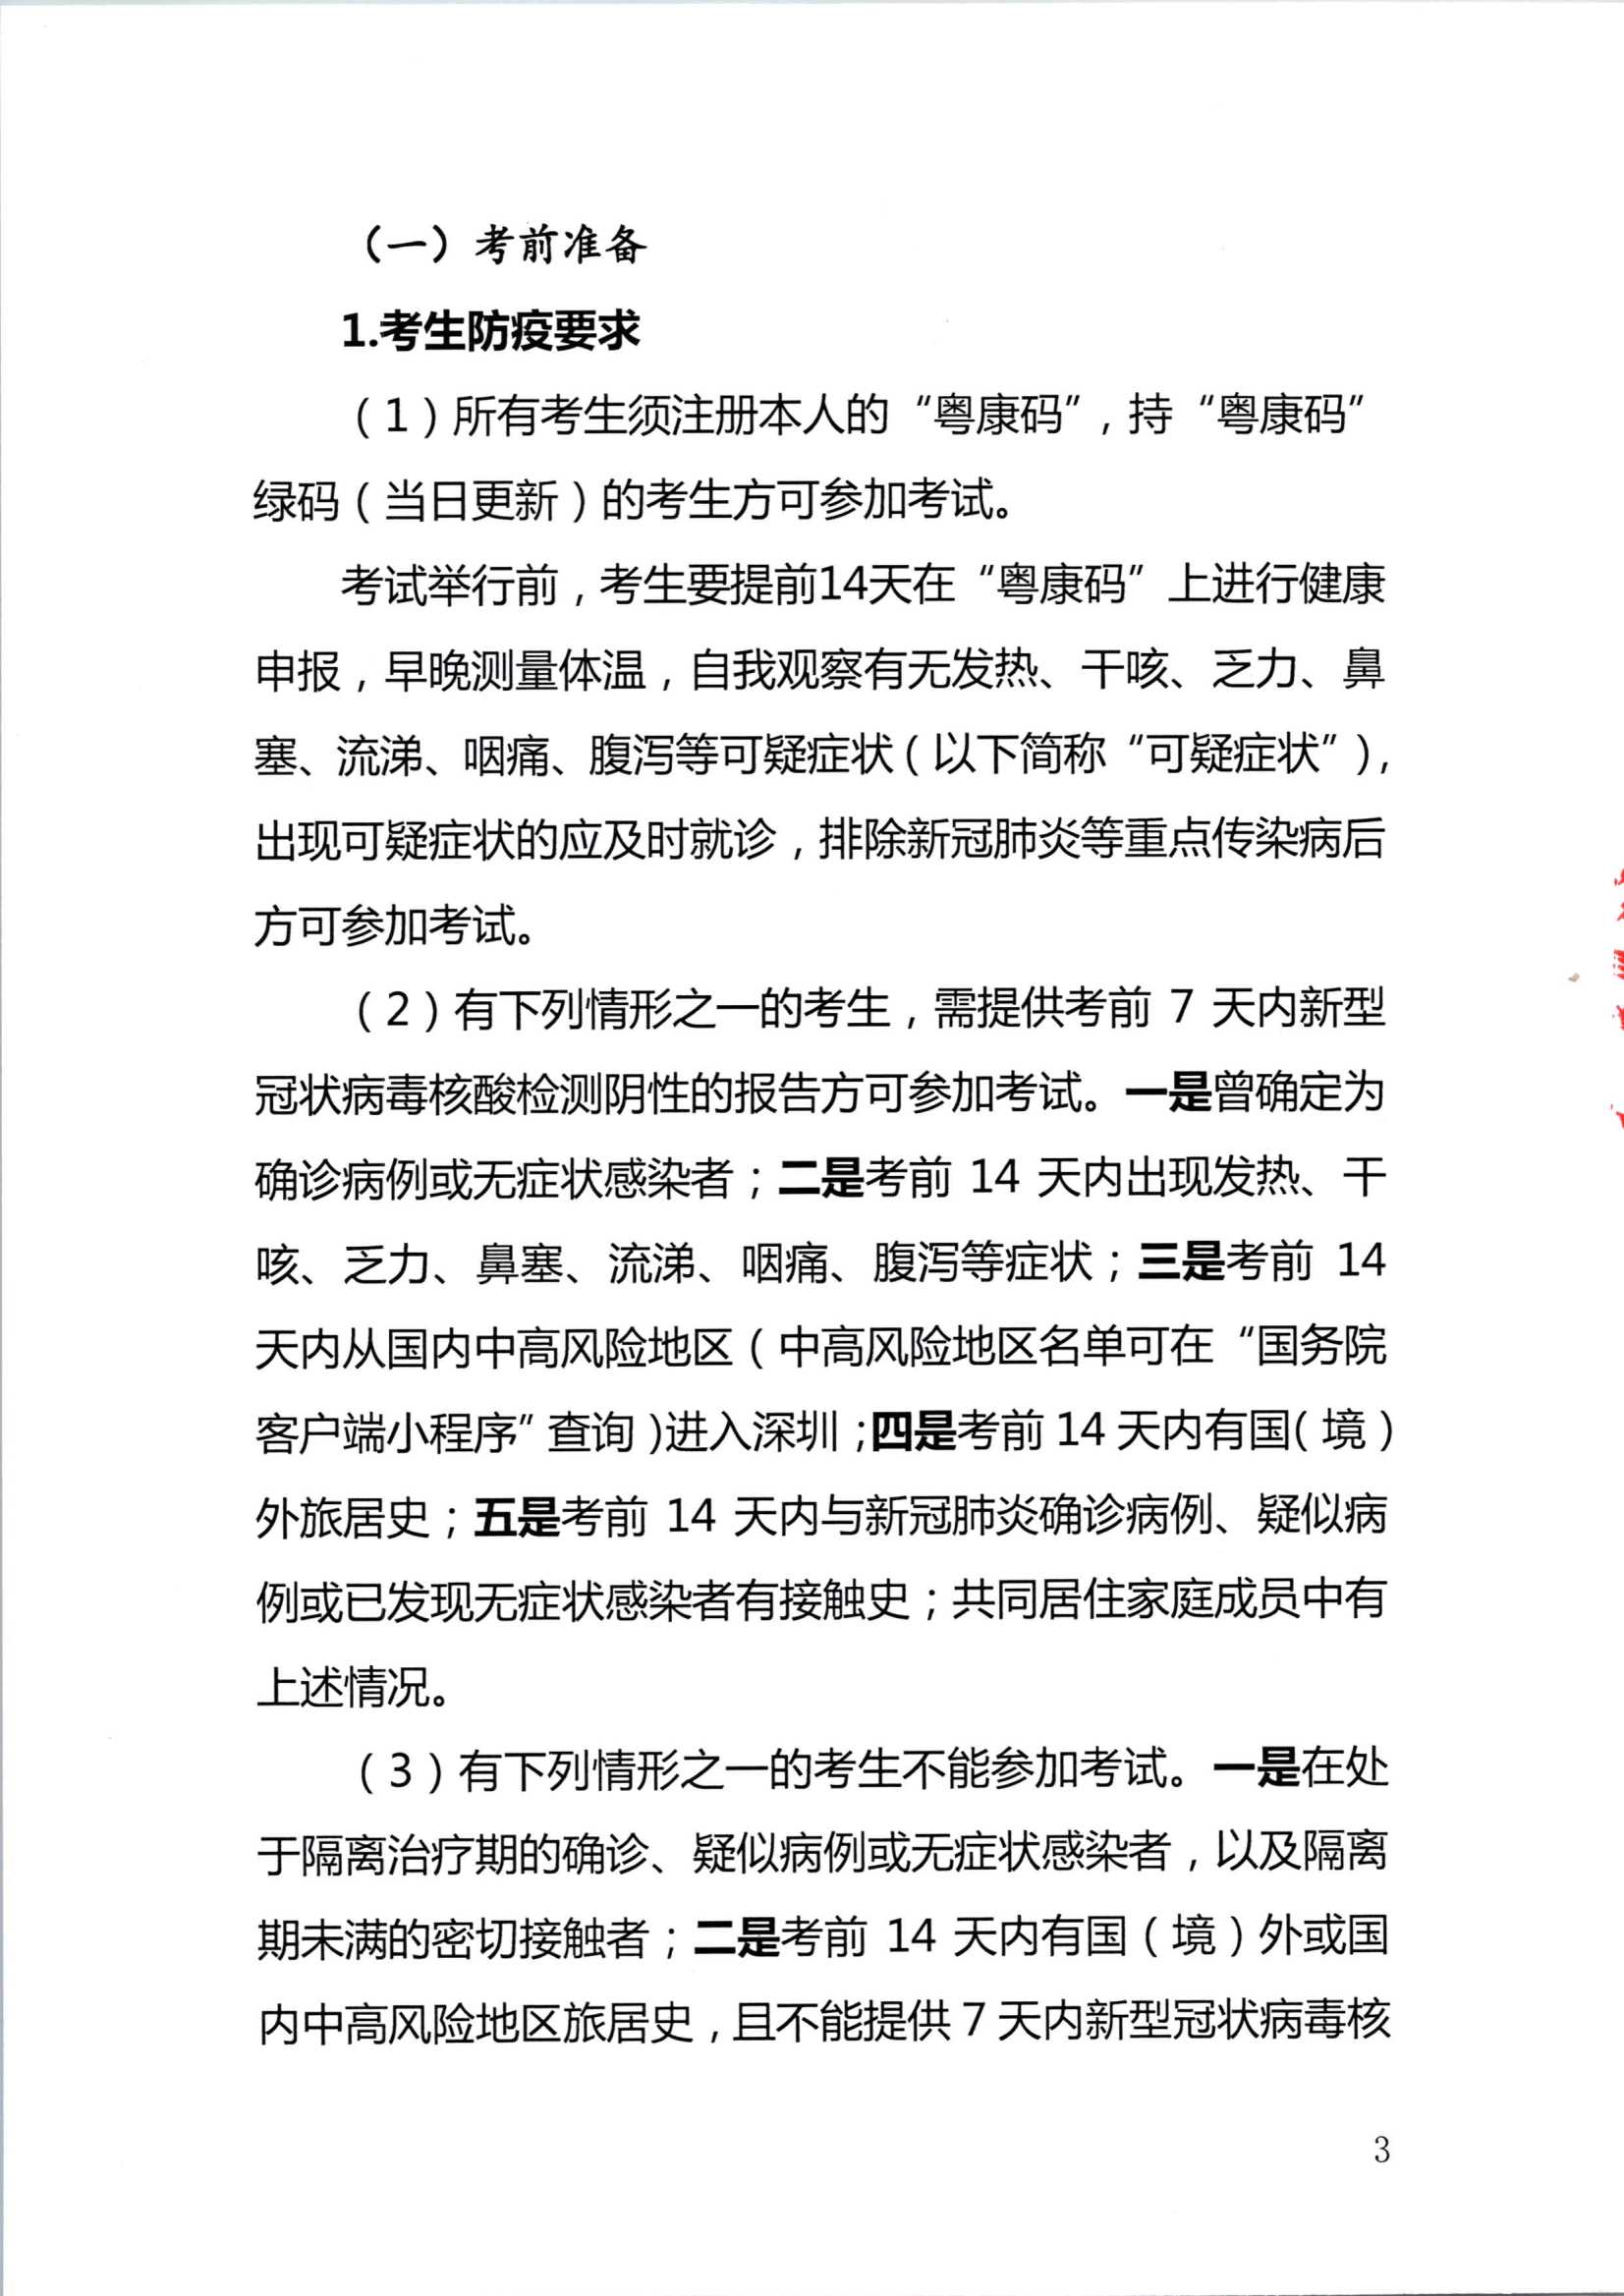 2020注册会计师全国统一考试深圳考区疫情防控工作方案_3.Png